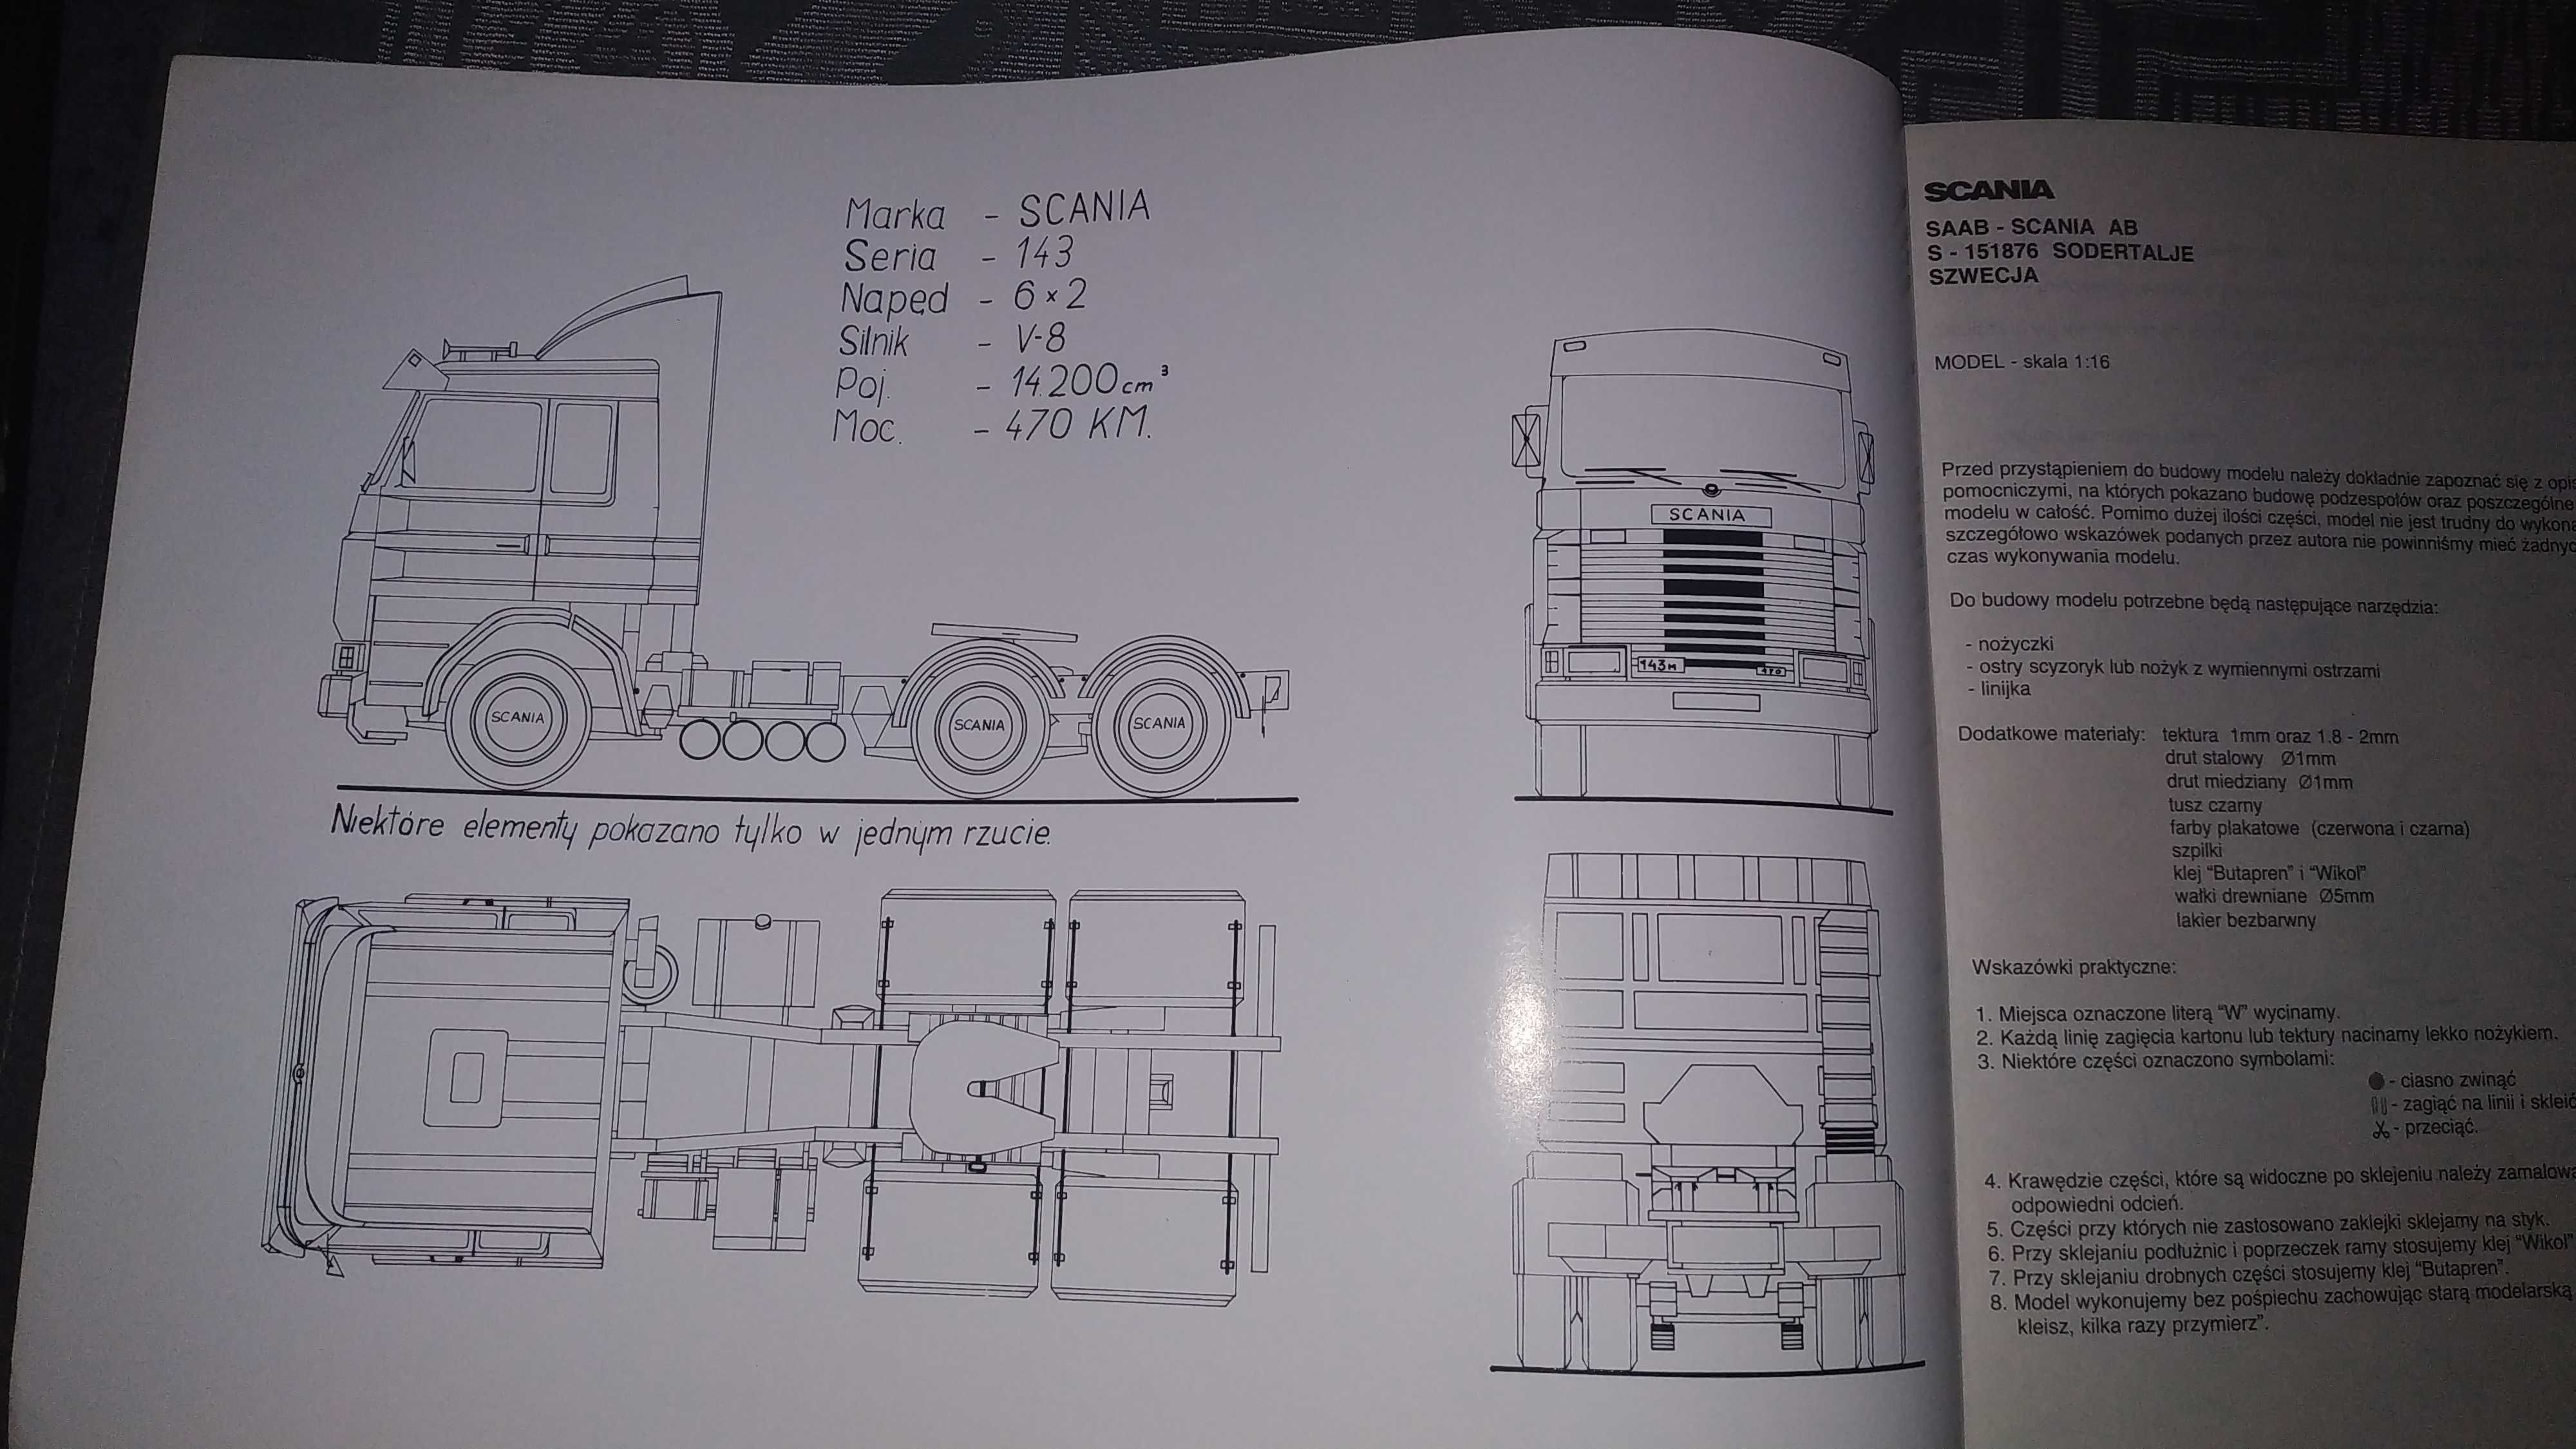 Auto karton model Scania Topline R 143 Skala 1:16